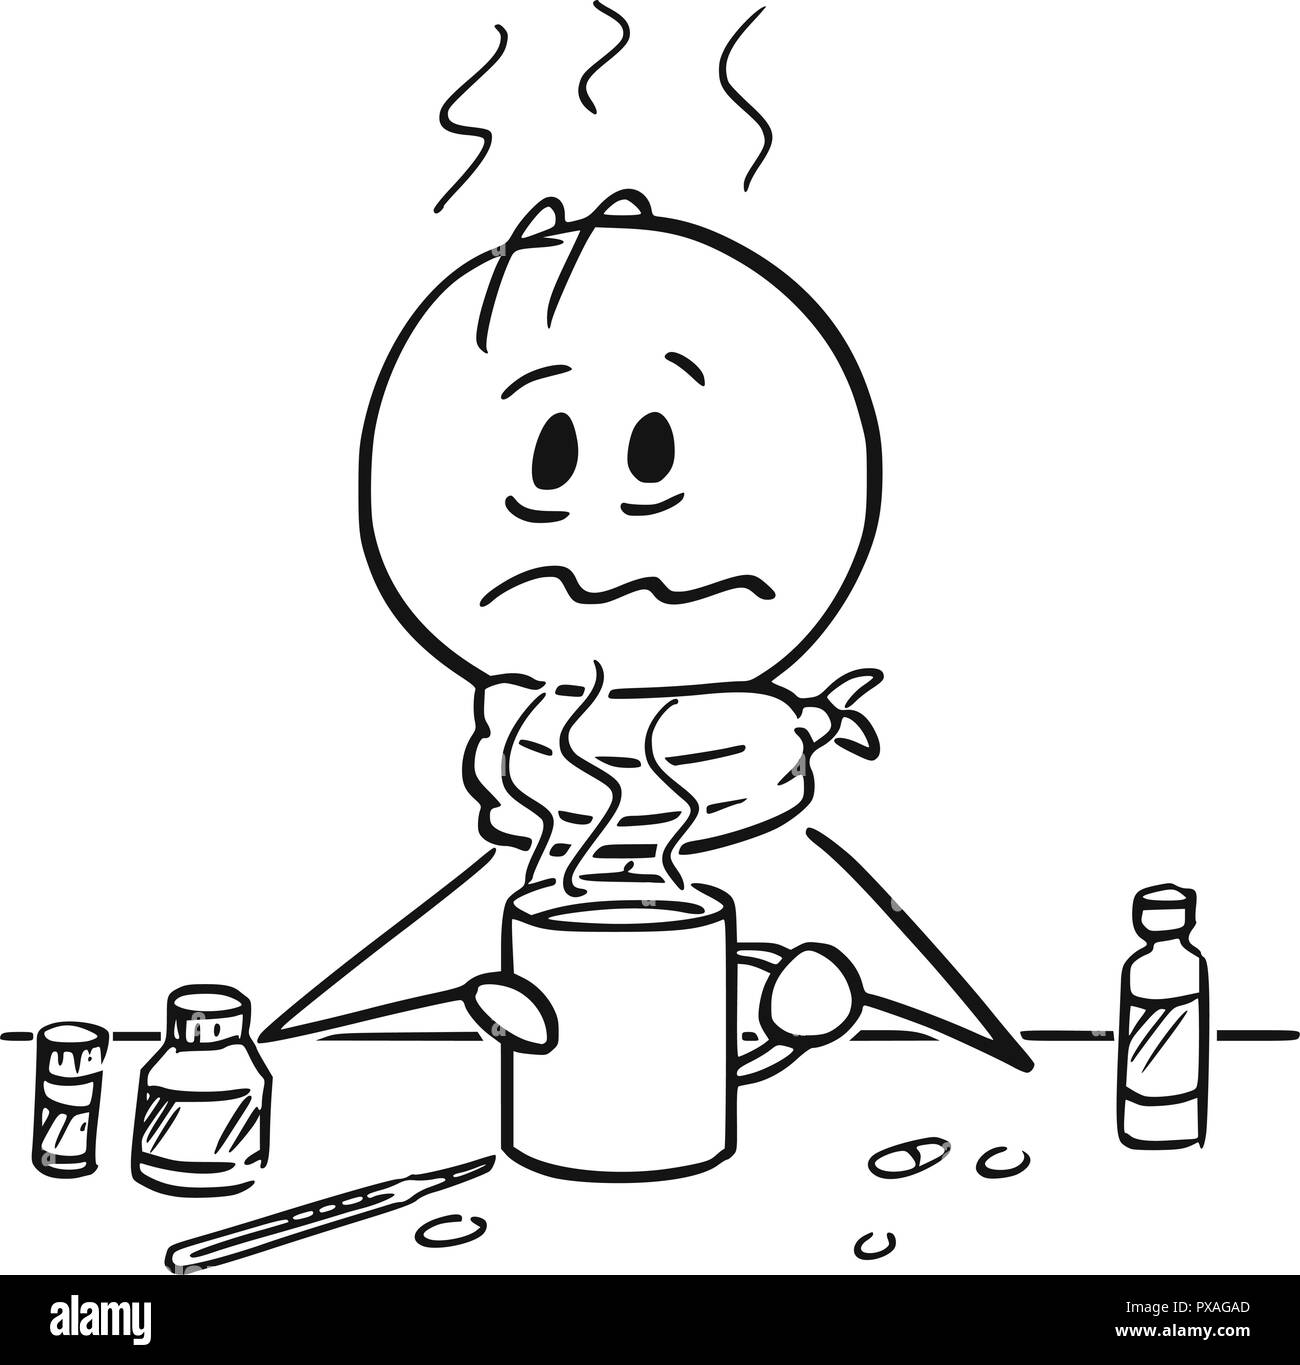 Caricatura de hombre enfermo con gripe y fiebre beber té caliente. Ilustración del Vector